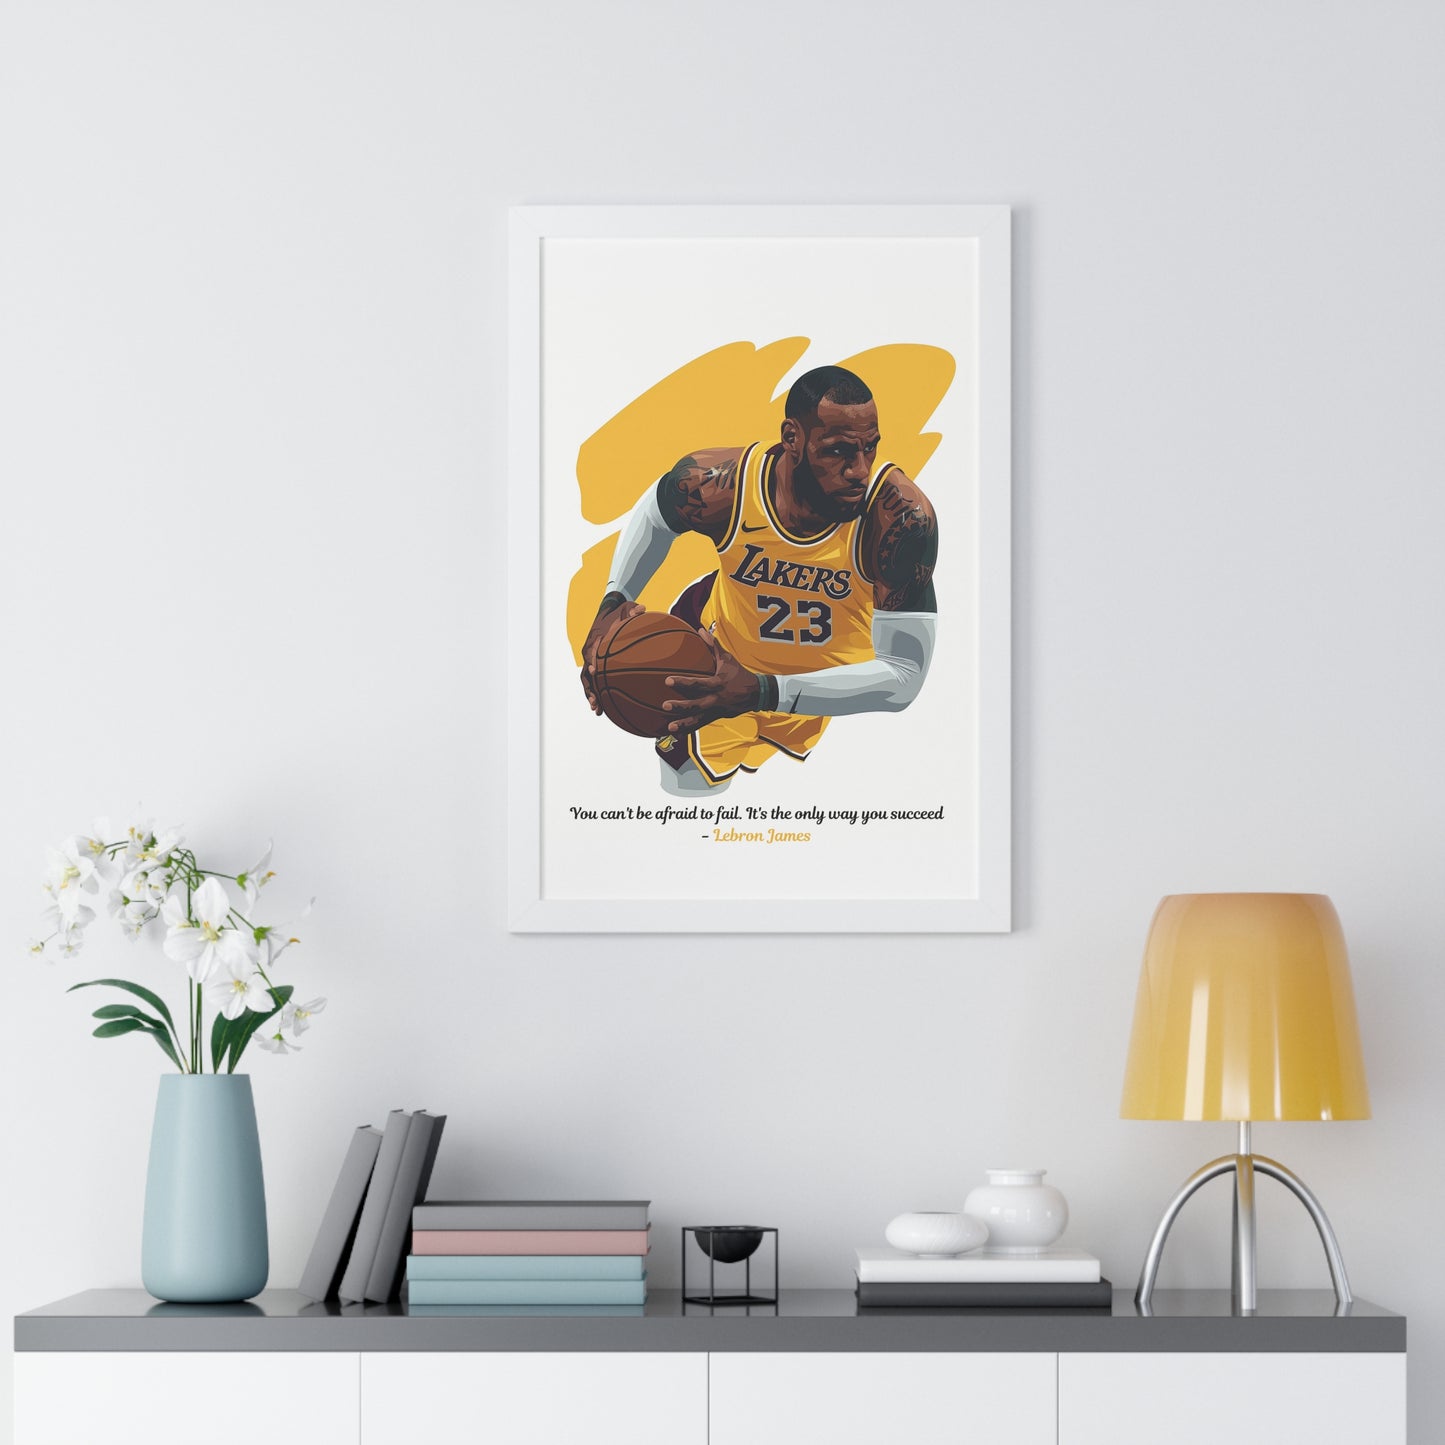 Lebron James Inspirational Framed Poster | Matte Paper Finish